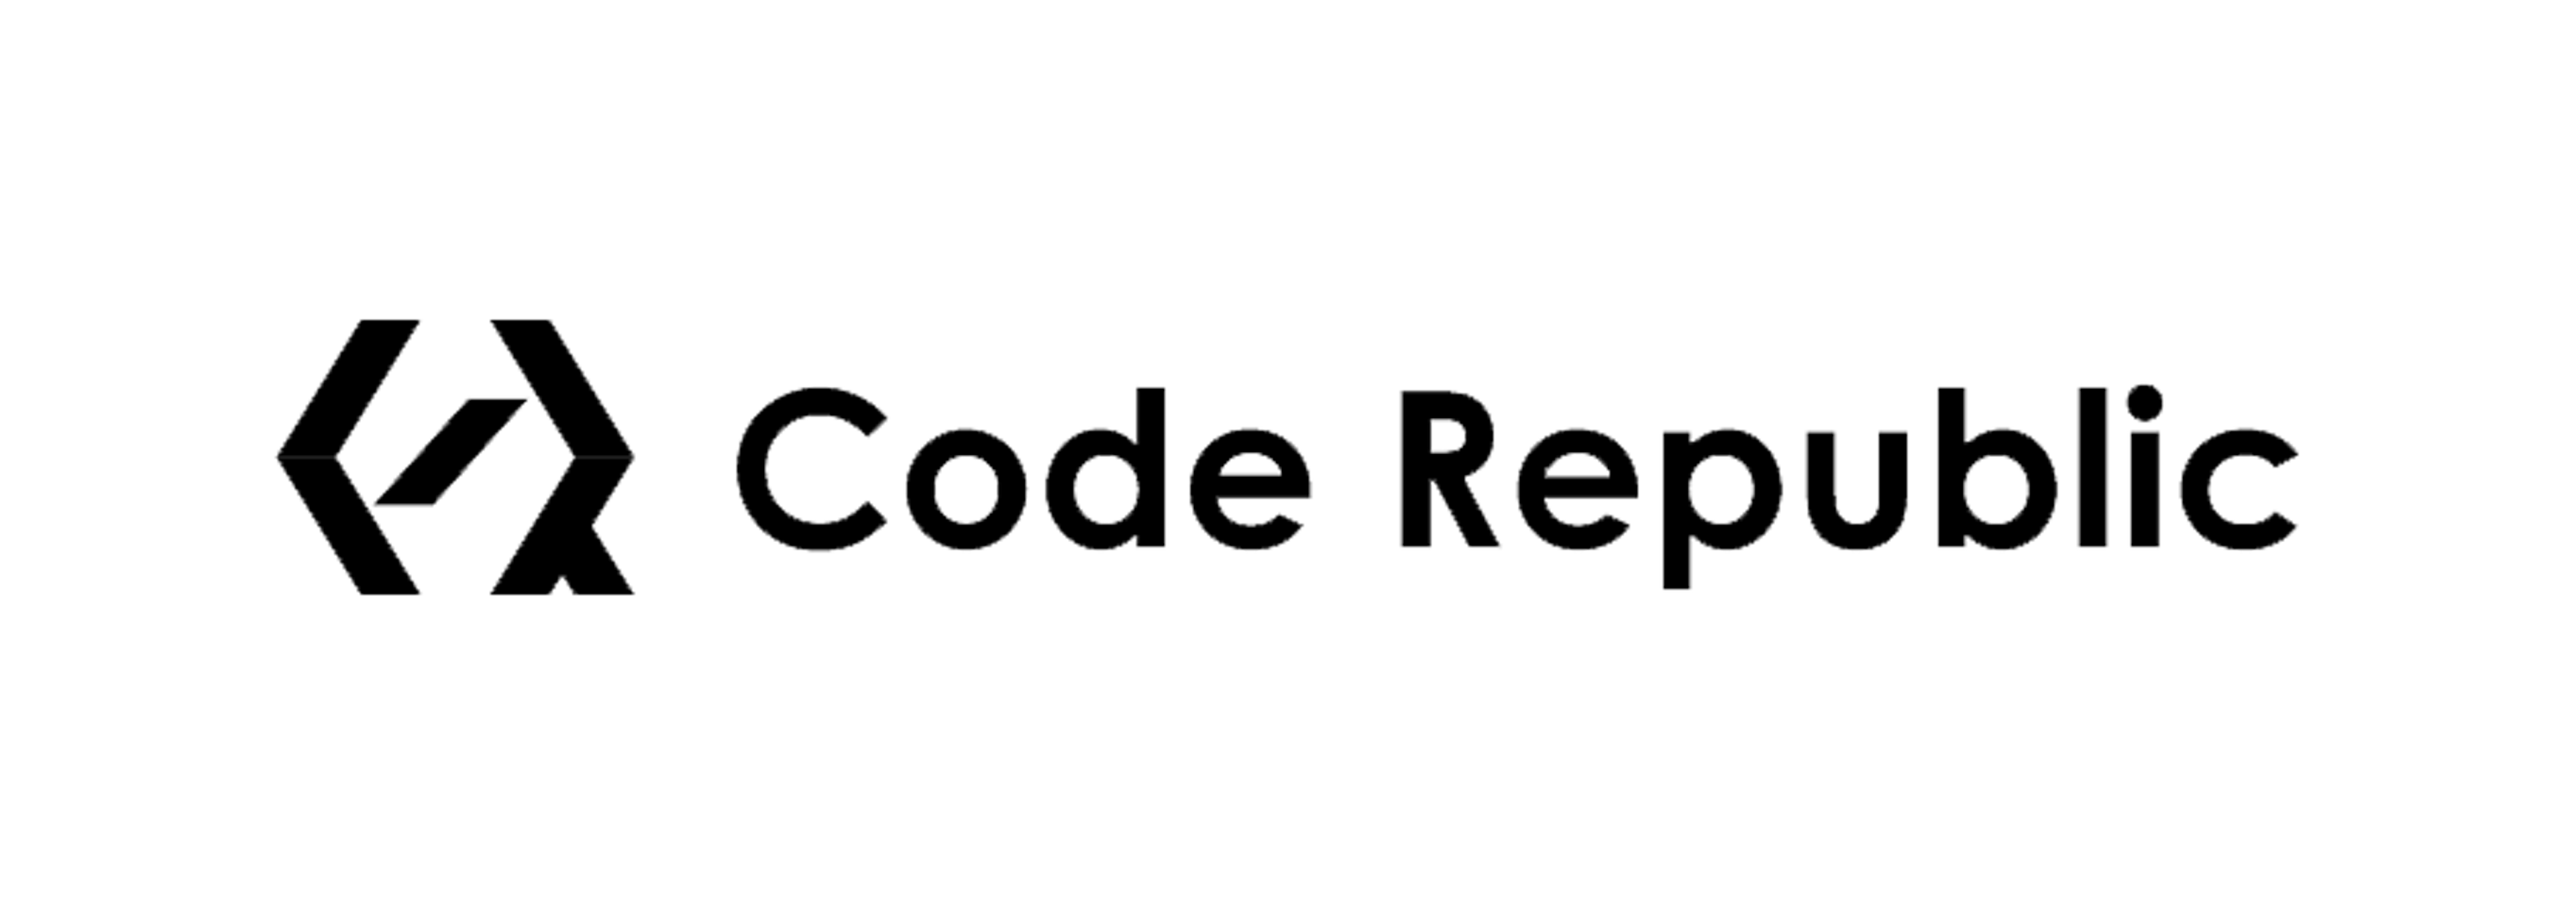 Code Republic